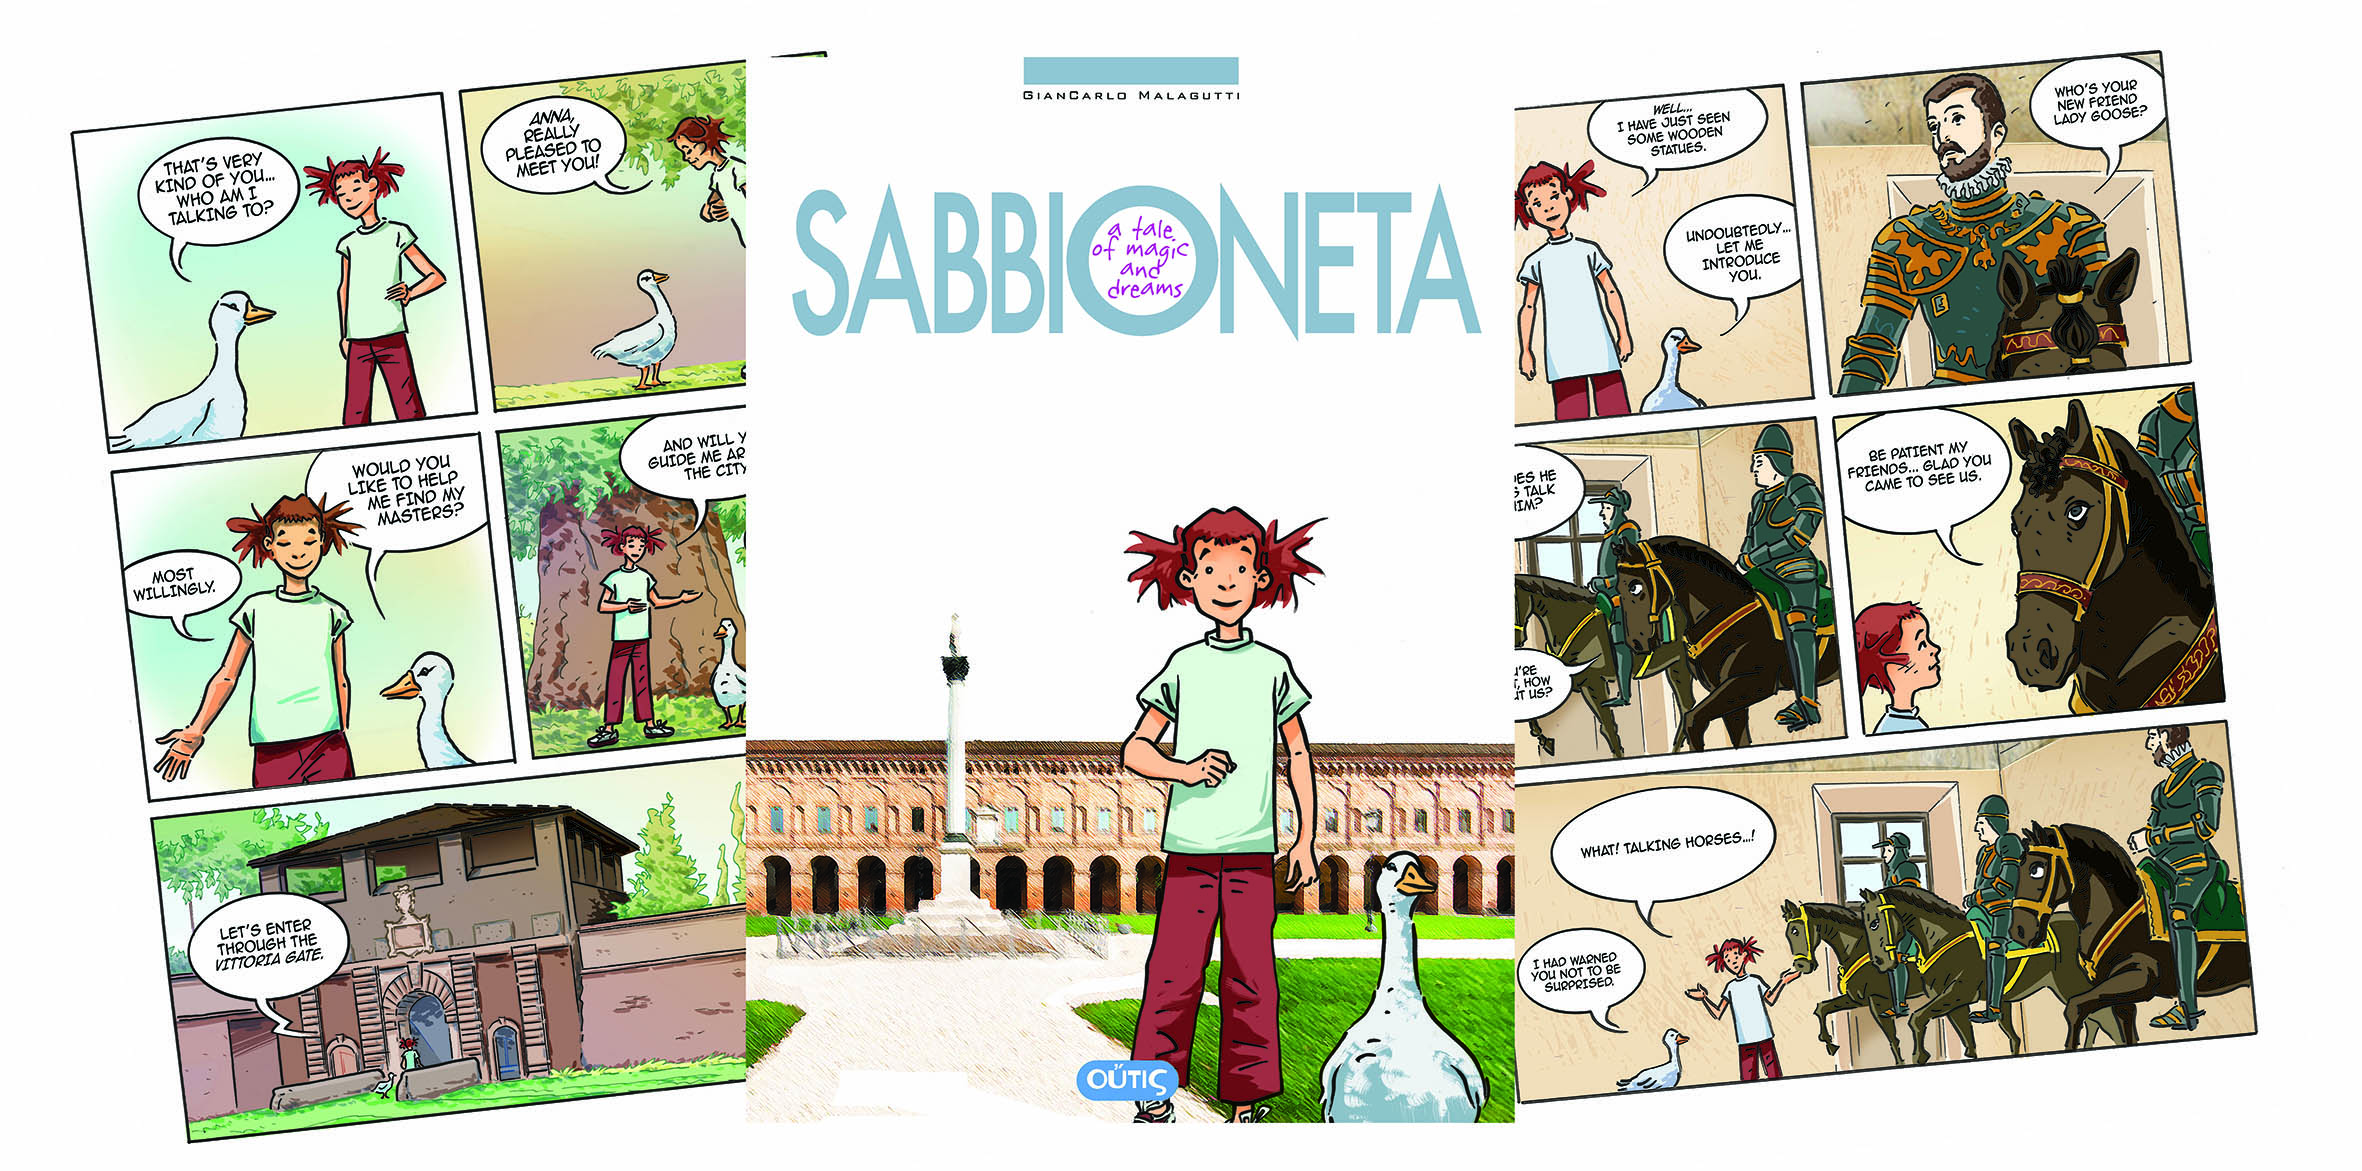 Sabbioneta…a tale of magic and dreams